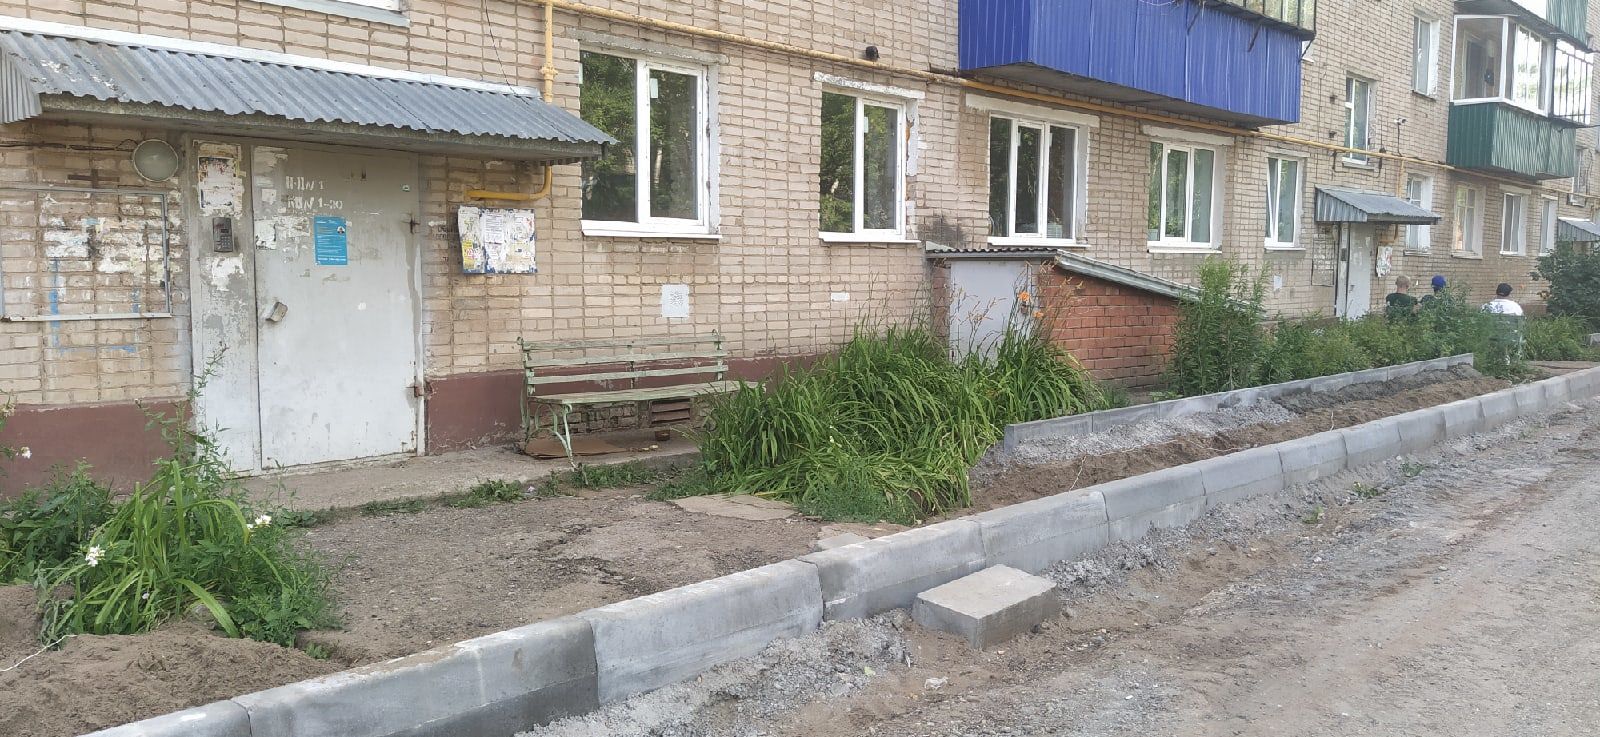 Во дворе дома 4 по улице Чоловского проходит ремонт дорог и тротуаров